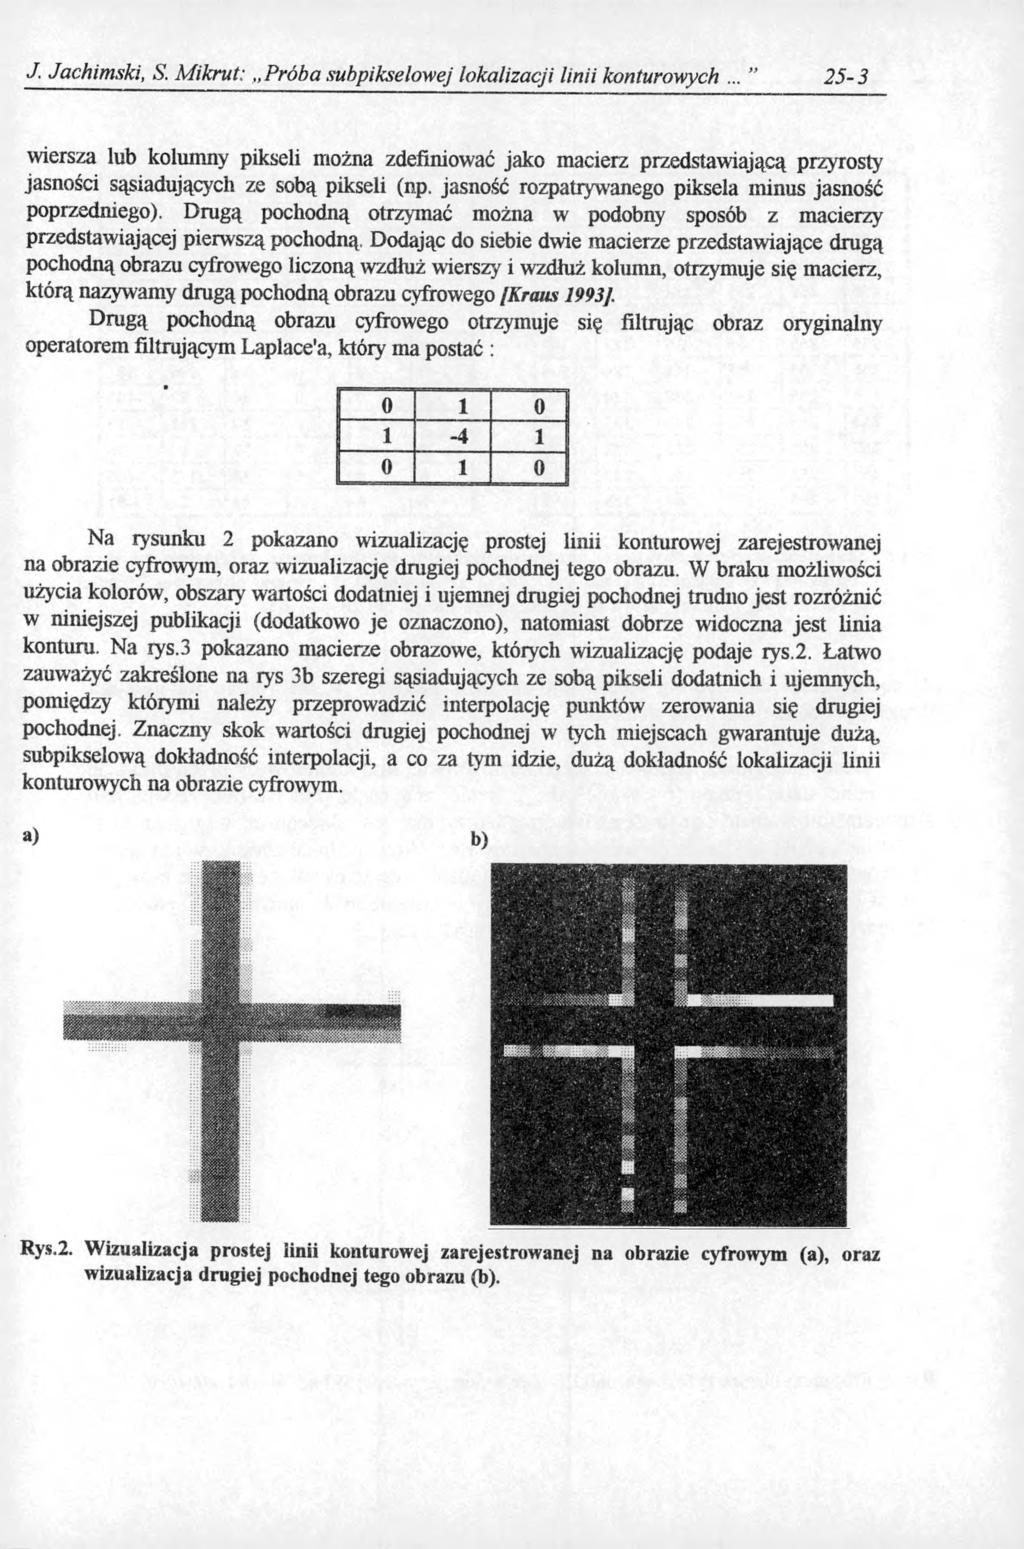 J. Jachimski, S. M ikrut: Próba subpikselowej lokalizacji linii konturowych.